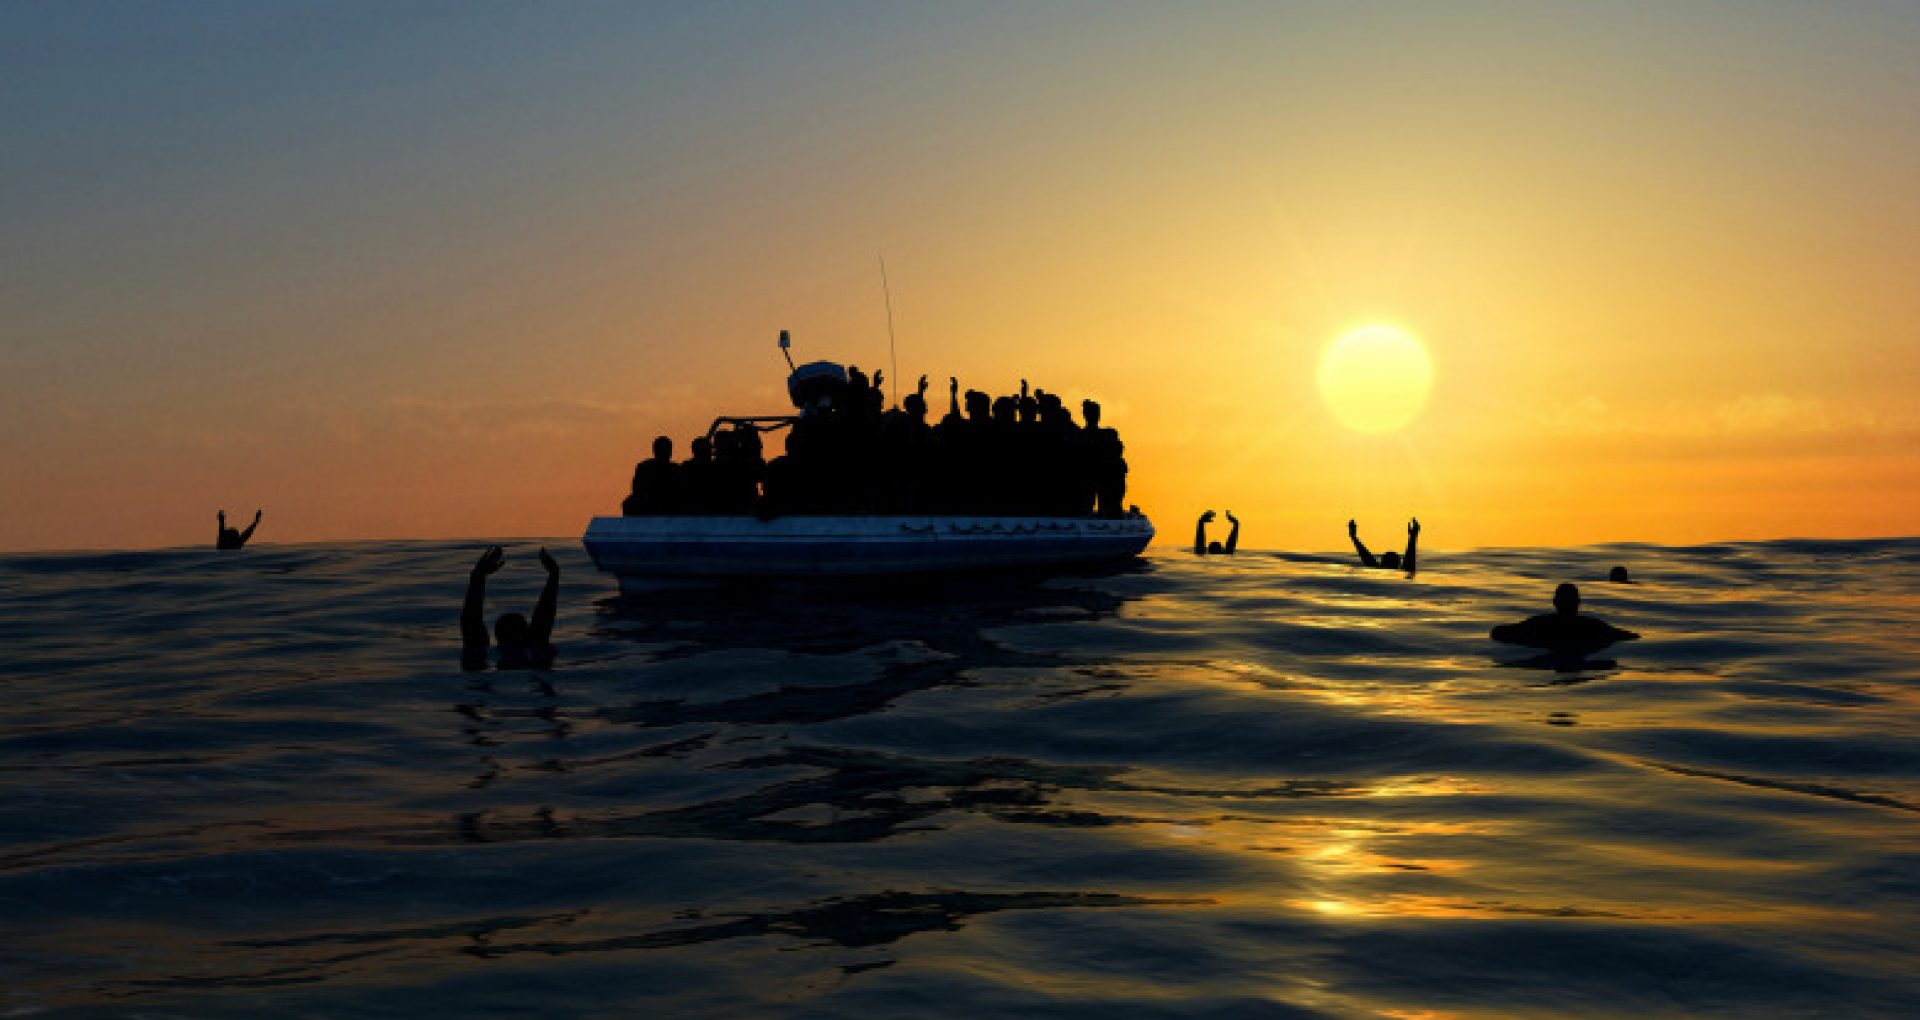 O ambarcațiune s-a scufundat lângă Creta. Șapte oameni au murit, iar 90 s-au refugiat pe stânci așteptând să fie salvați